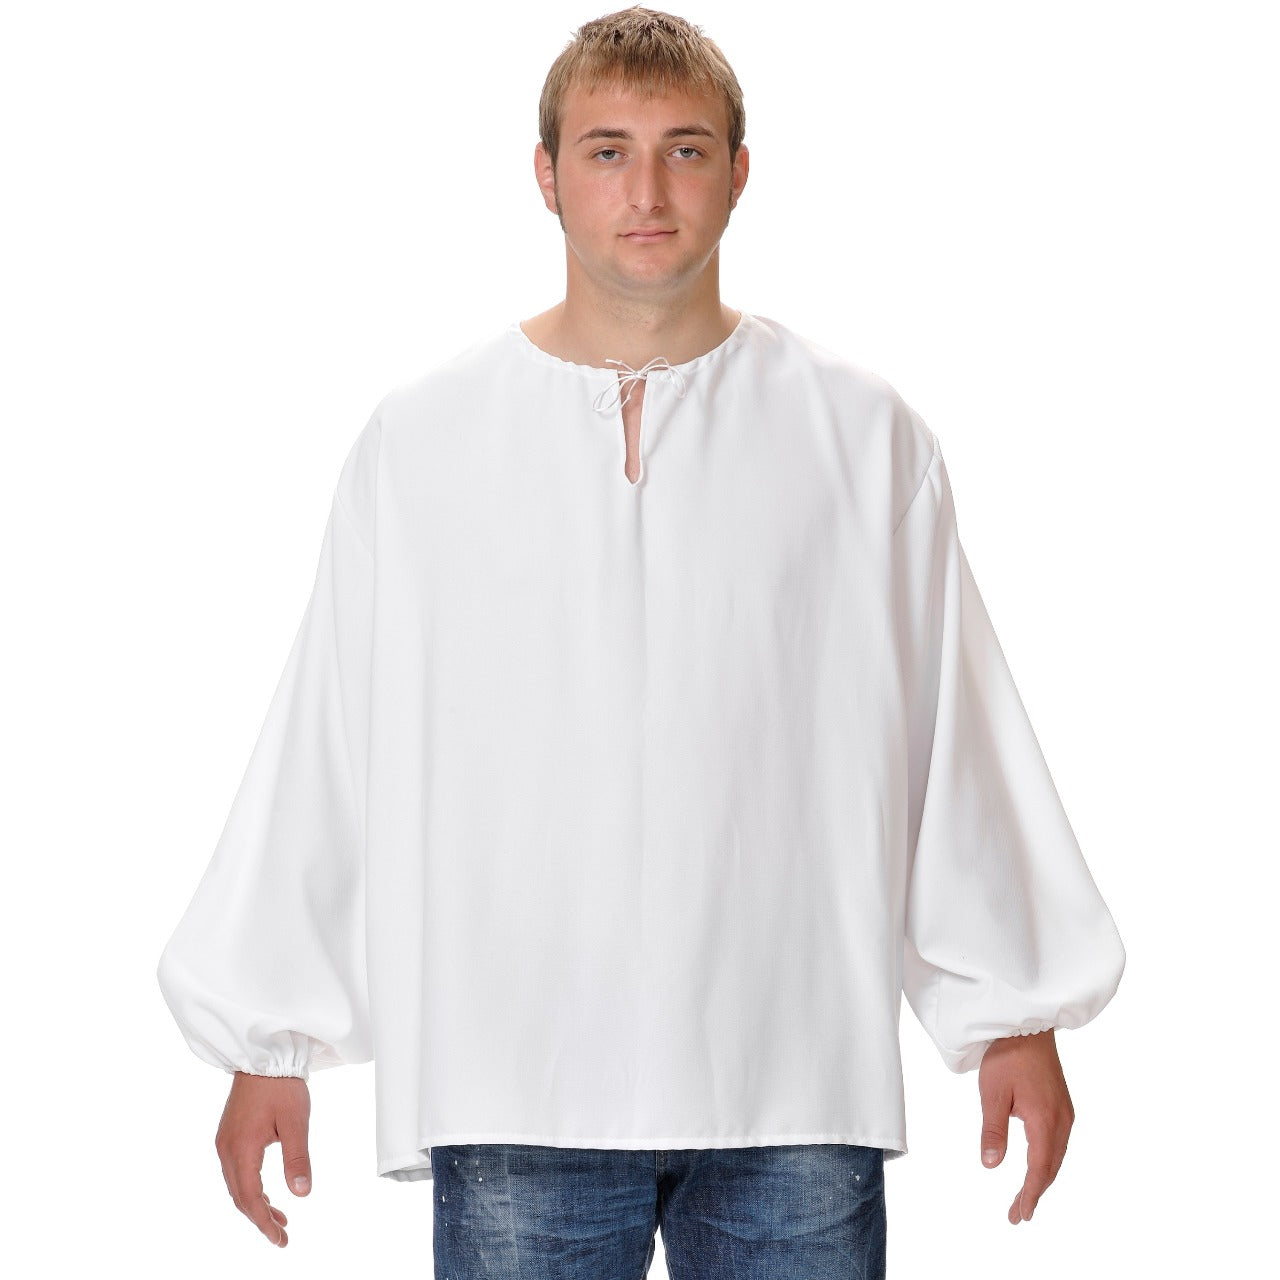 Camisa Medieval Branca - tamanho único